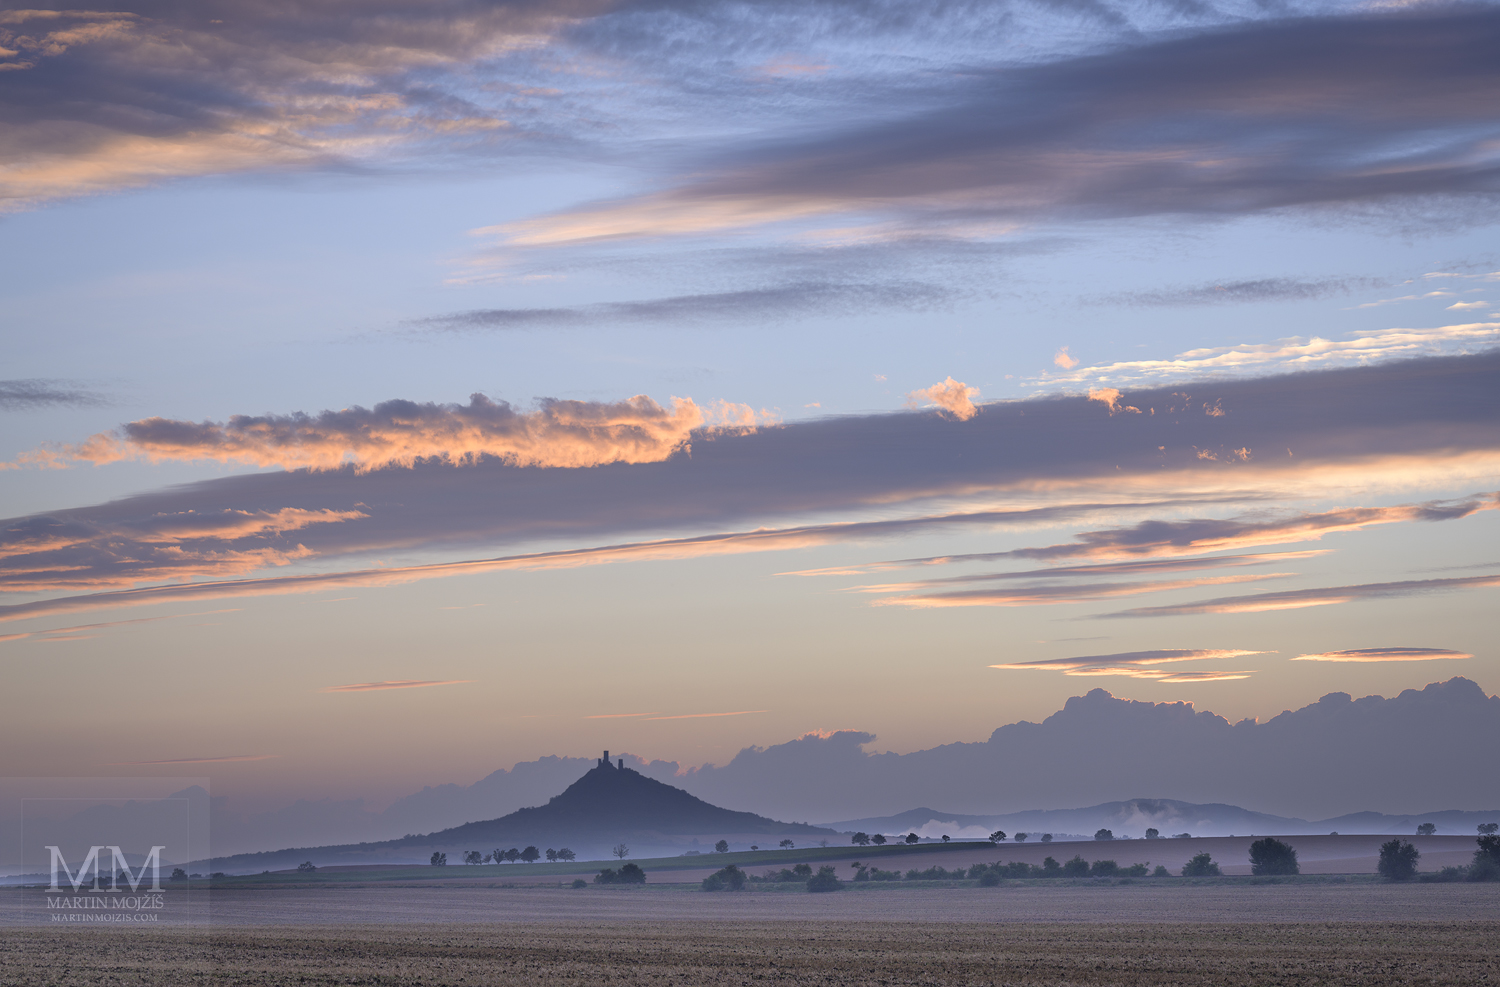 Krajina s večerními mlhami, v pozadí vrch Hazmburk (Klapý). Umělecká velkoformátová fotografie Letní den již usíná. Fotograf Martin Mojžíš.